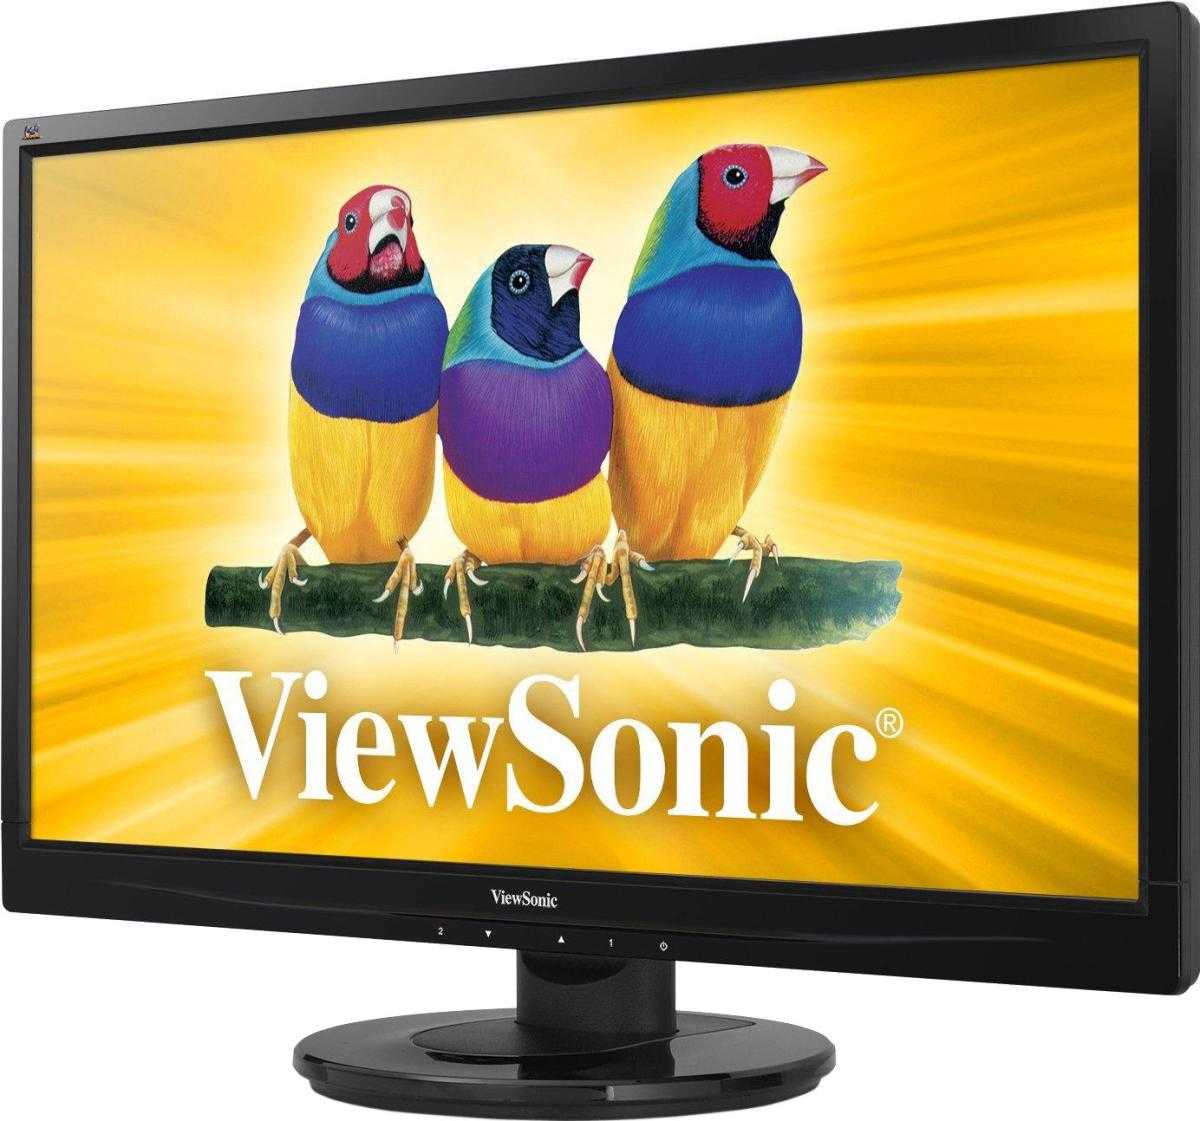 Жк монитор 28" viewsonic va2855smh — купить, цена и характеристики, отзывы